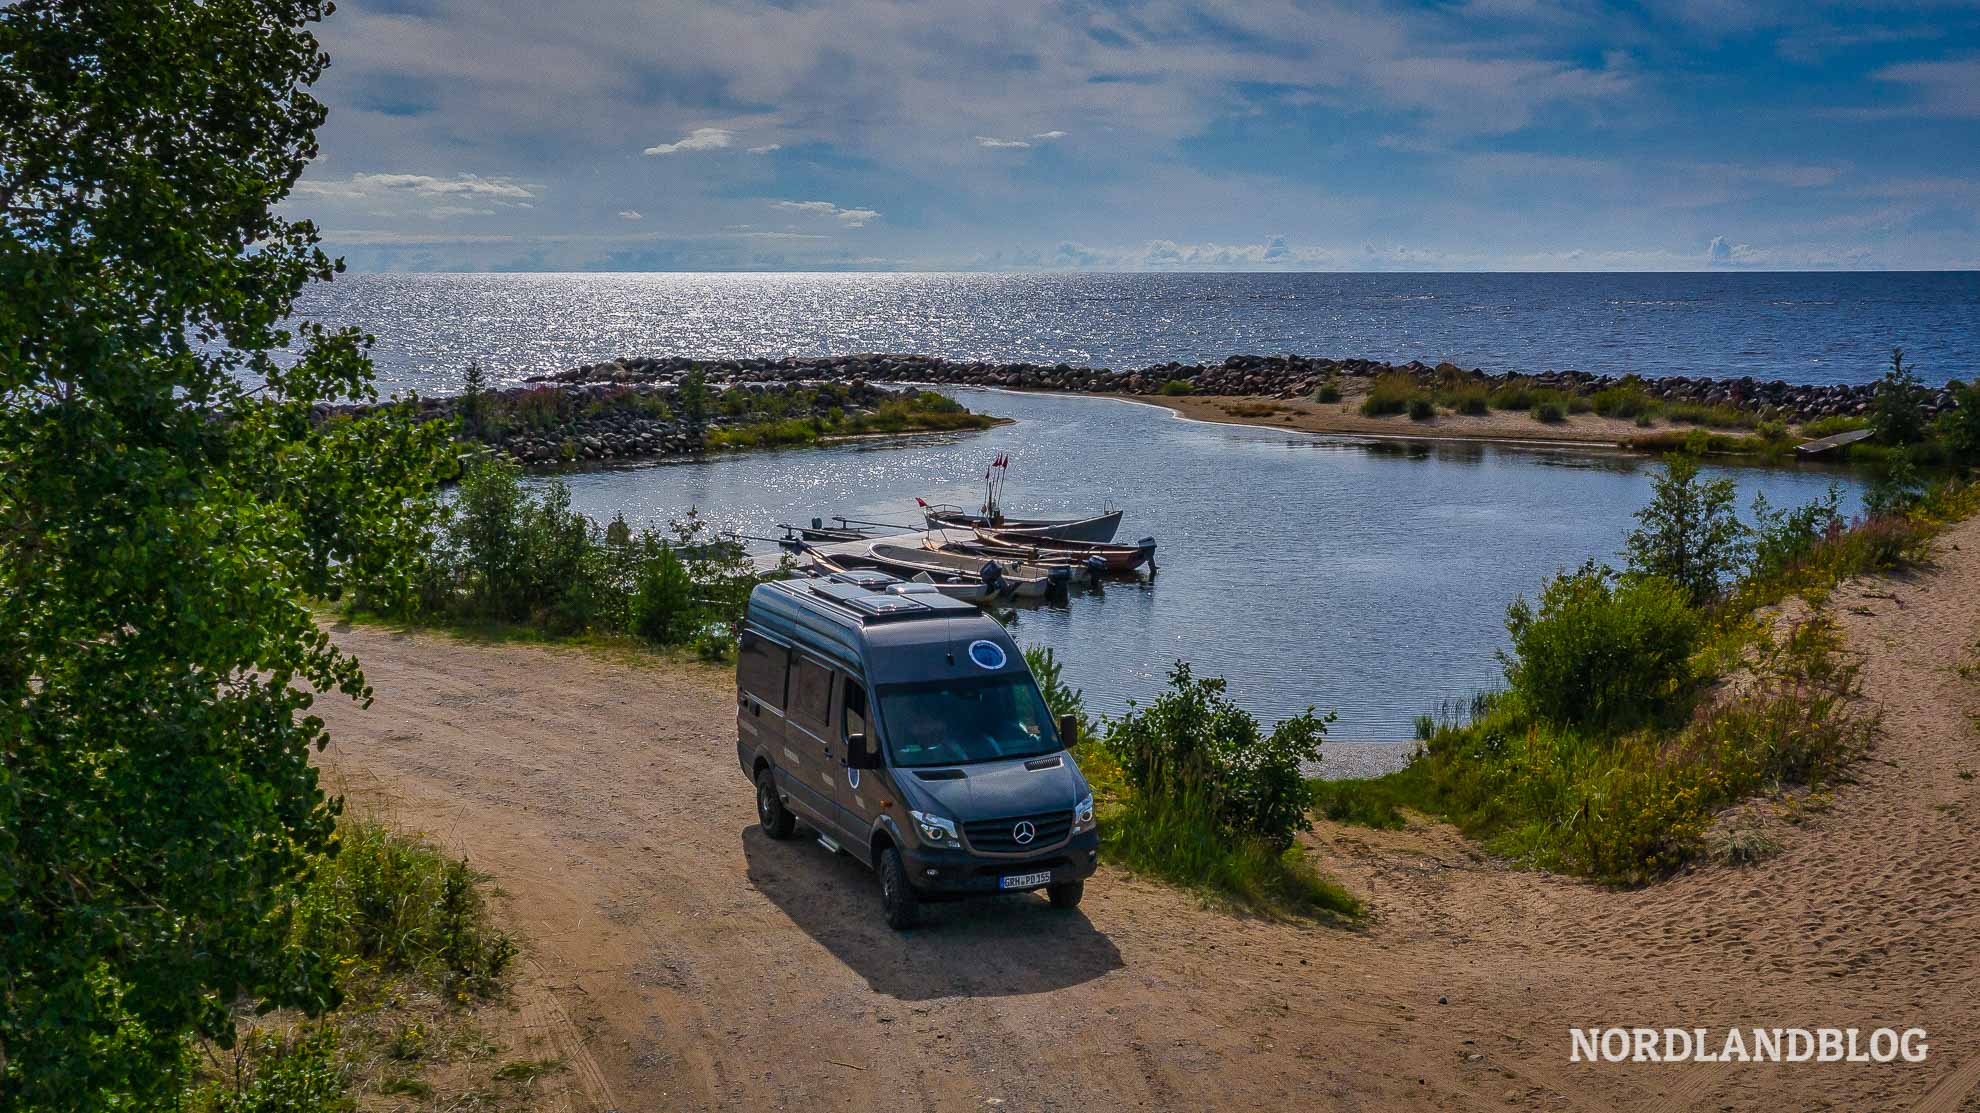 Wohnmobil Rundreise Nordfinnland Lappland Nordfinnland - Kastenwagen am Sandstrand finnische Ostseeküste Hailuoto